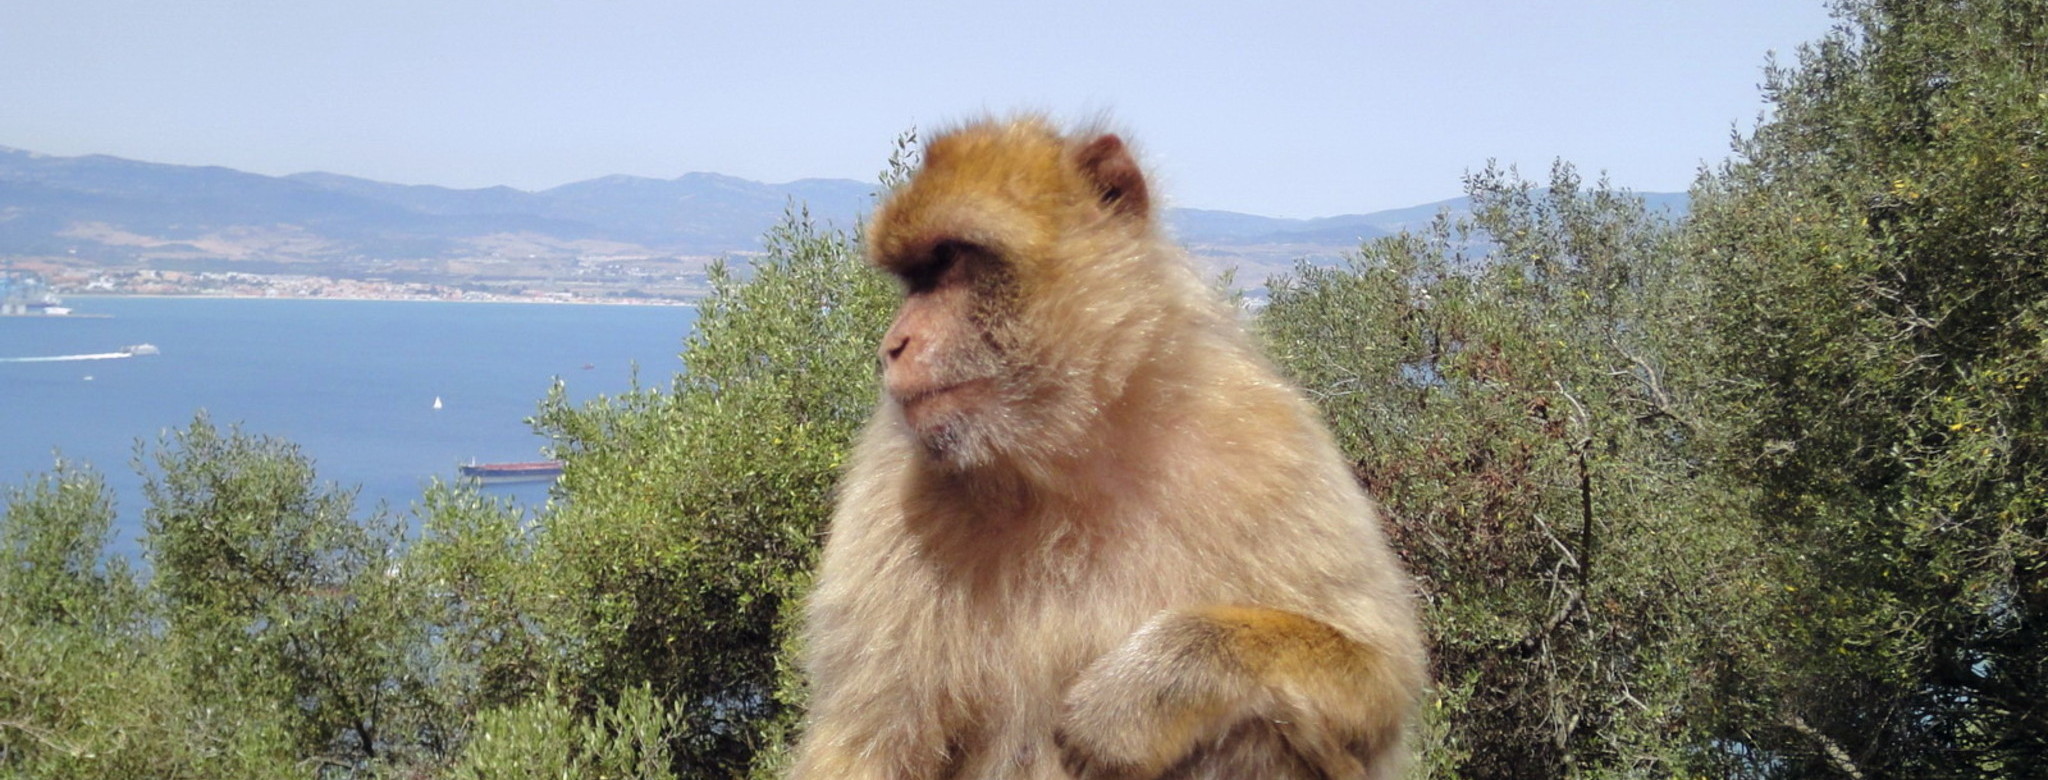 Affenfelsen in Gibraltar.